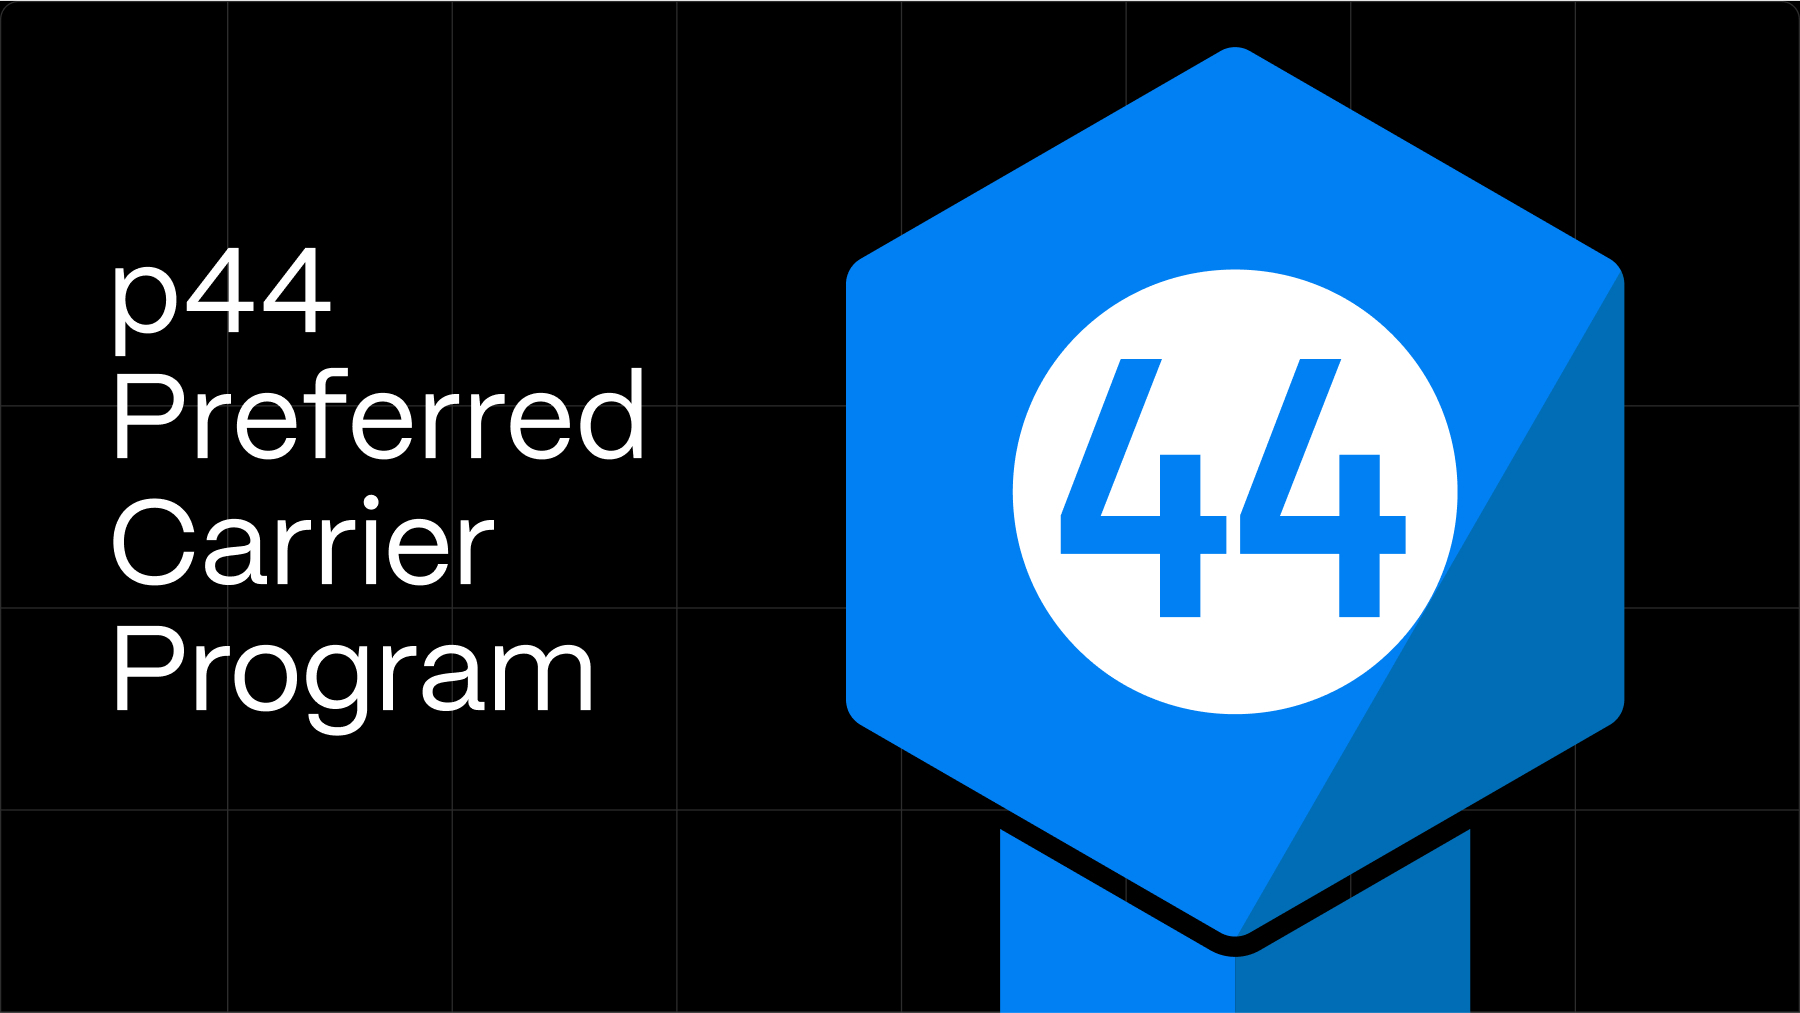 p44 preferred carrier program badge